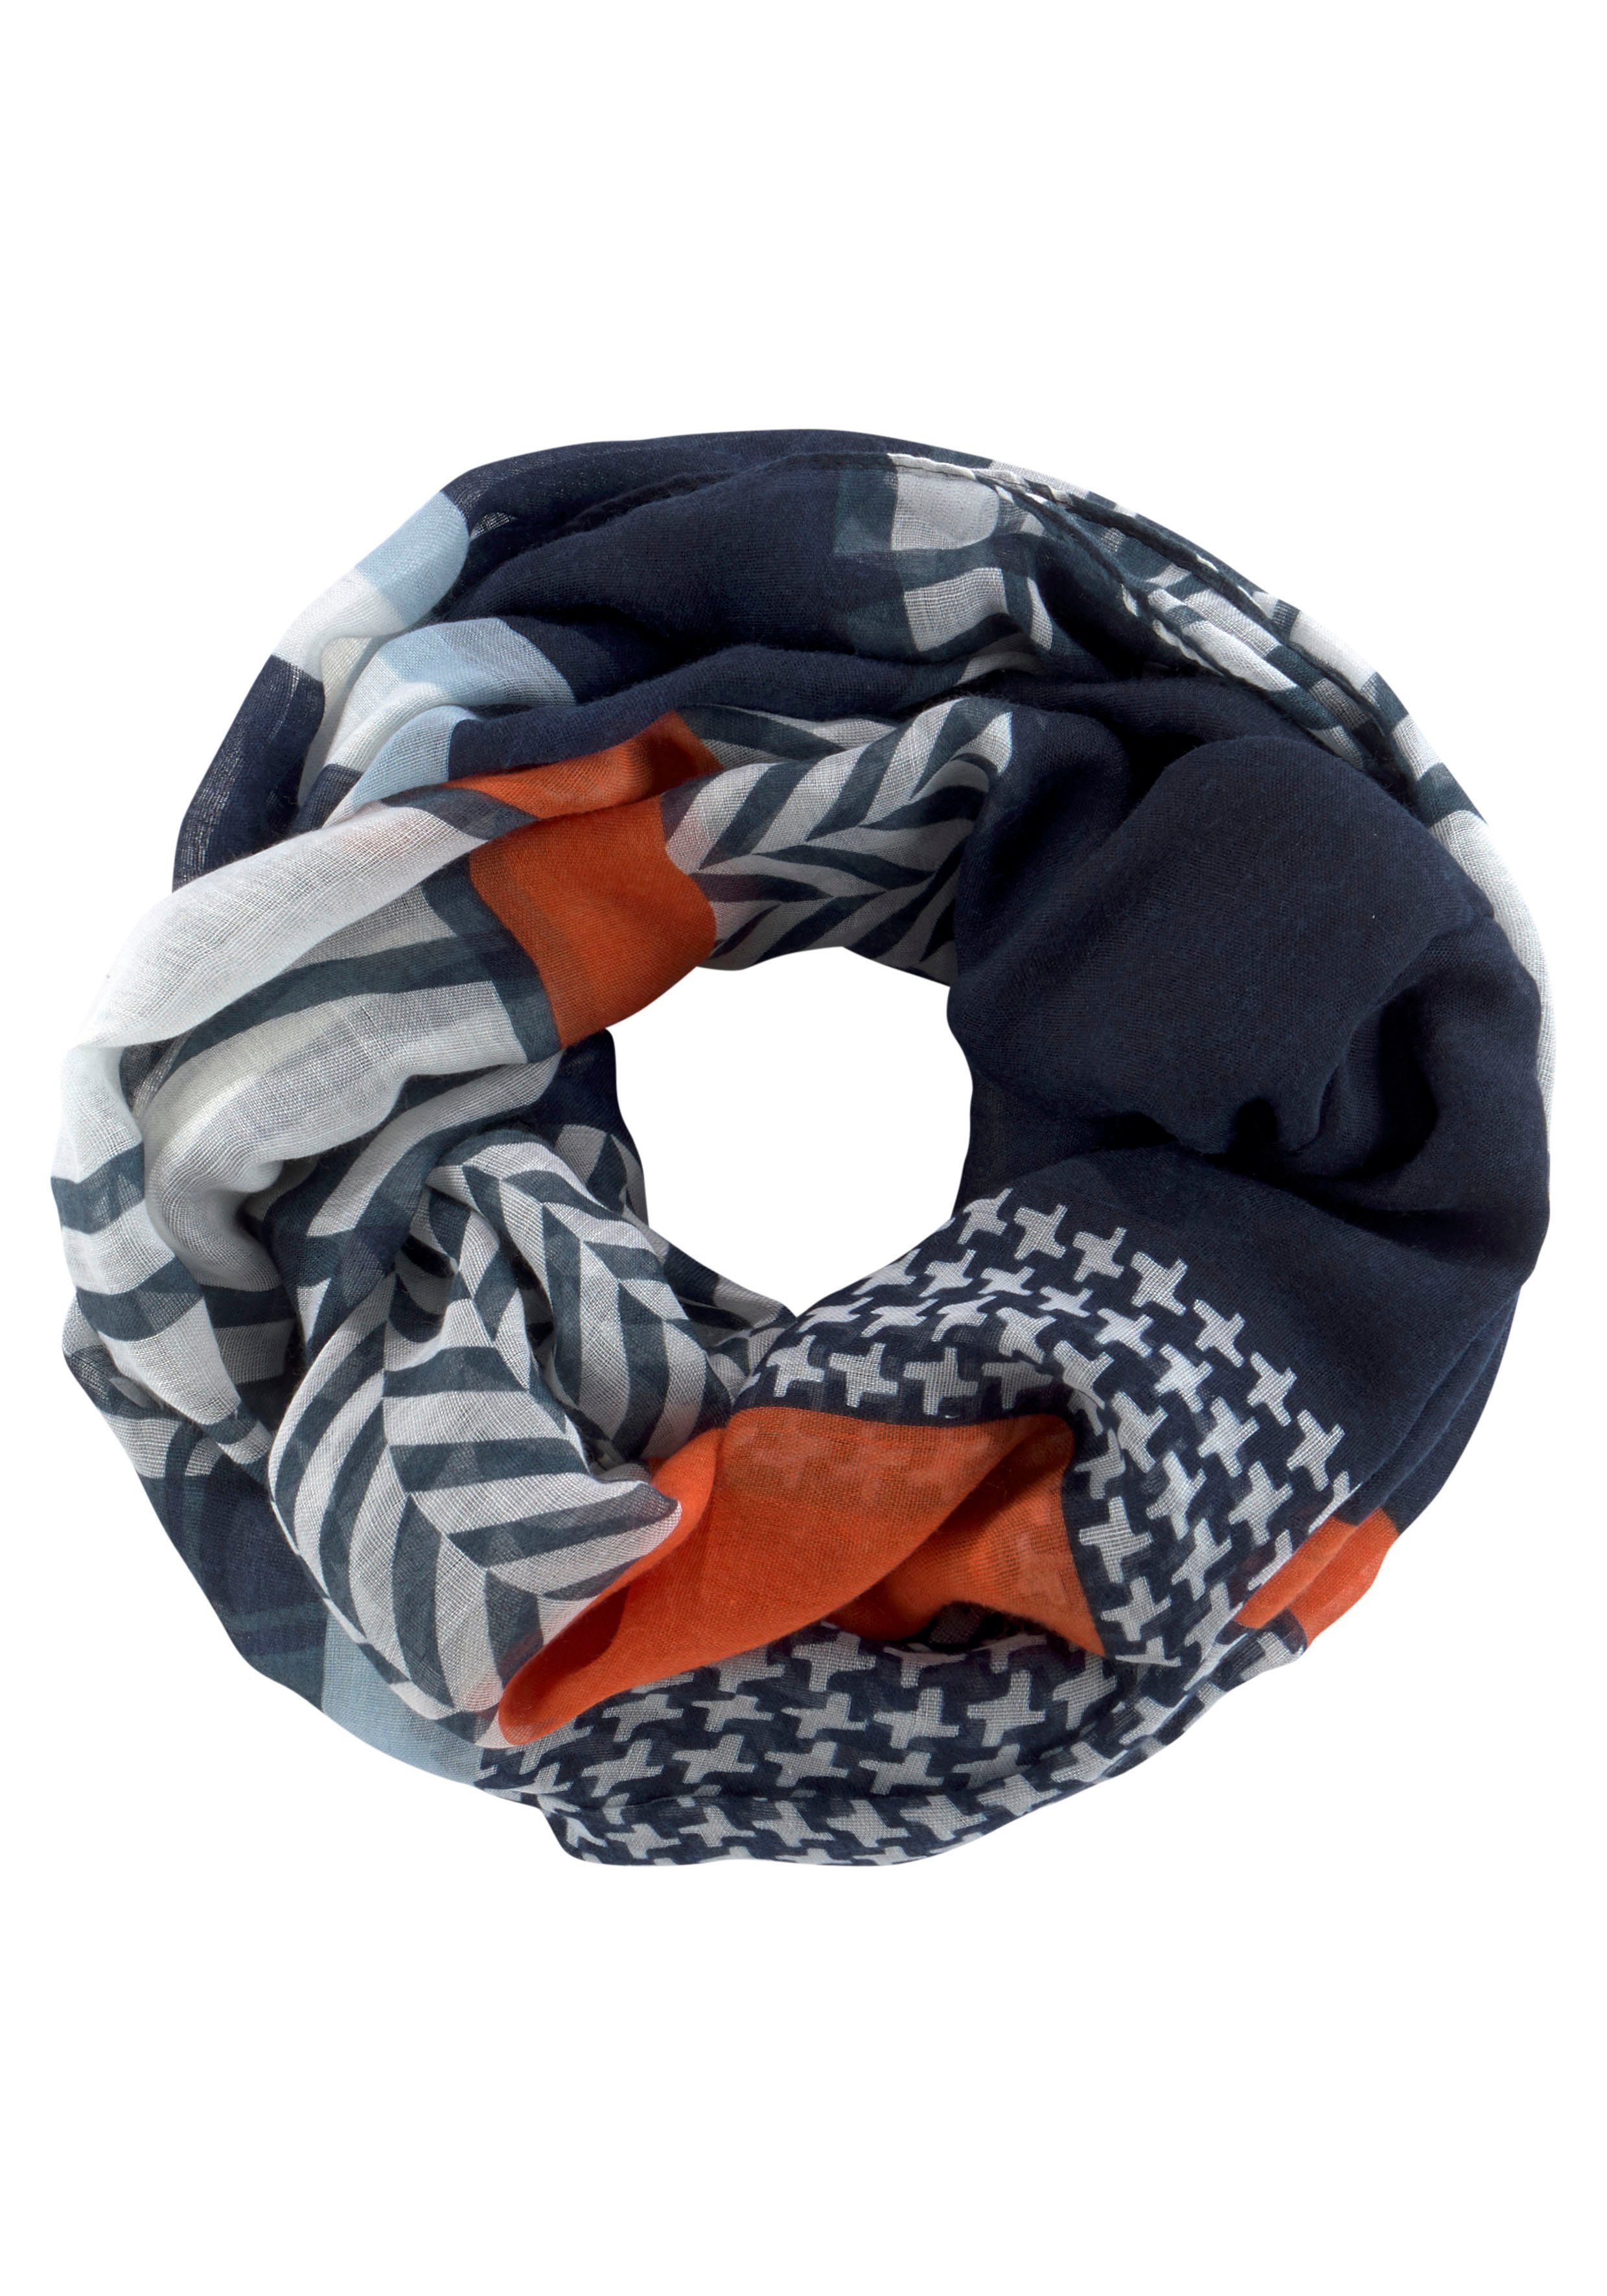 Schal in bunt online kaufen | OTTO